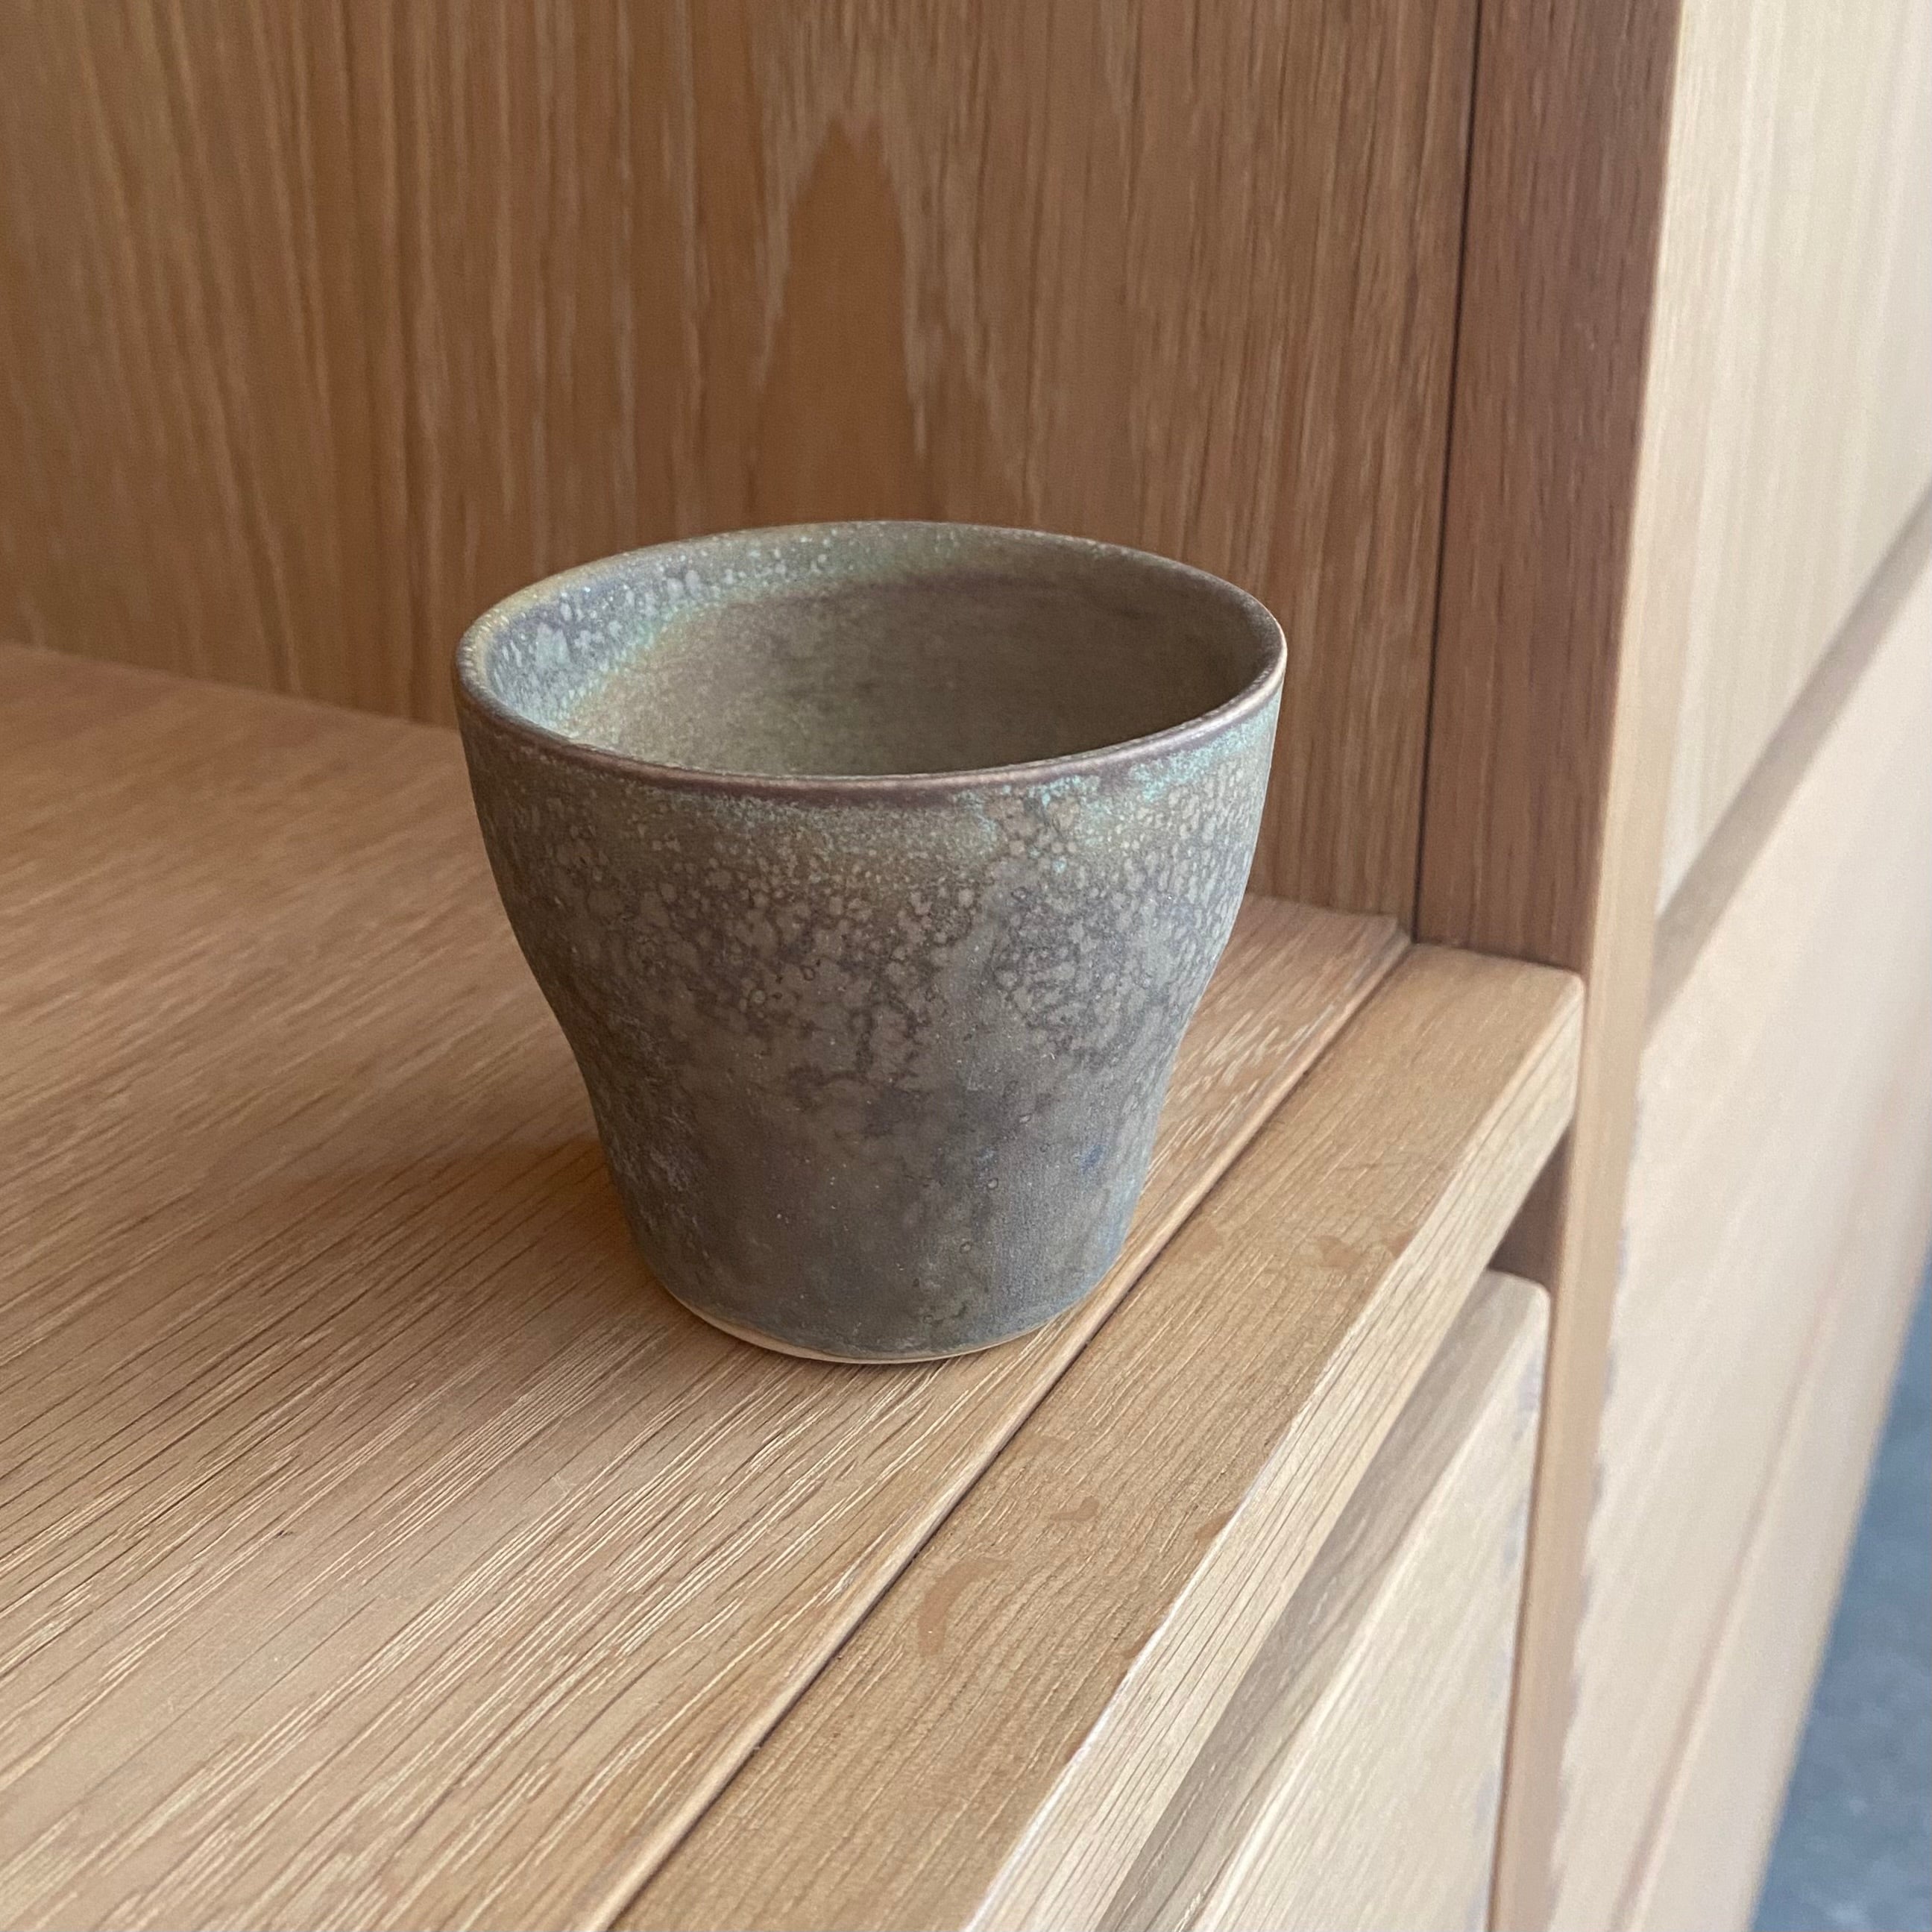 haandlavet keramikkop til espresso i designet nexoe. haandlavet af danske oh oak keramik 